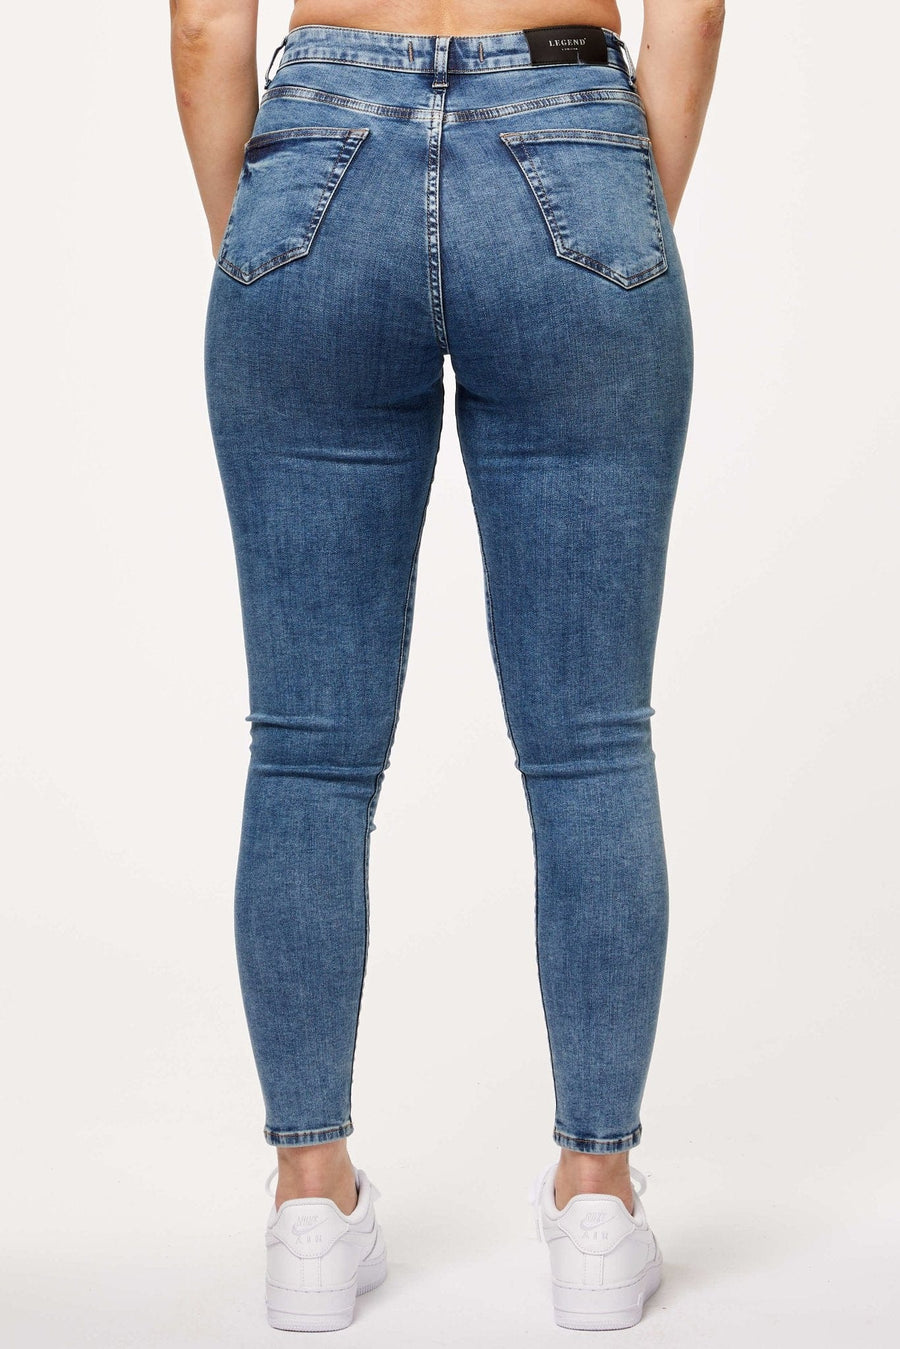 Legend London Women's Jeans SKINNY JEANS - BLUE DYE